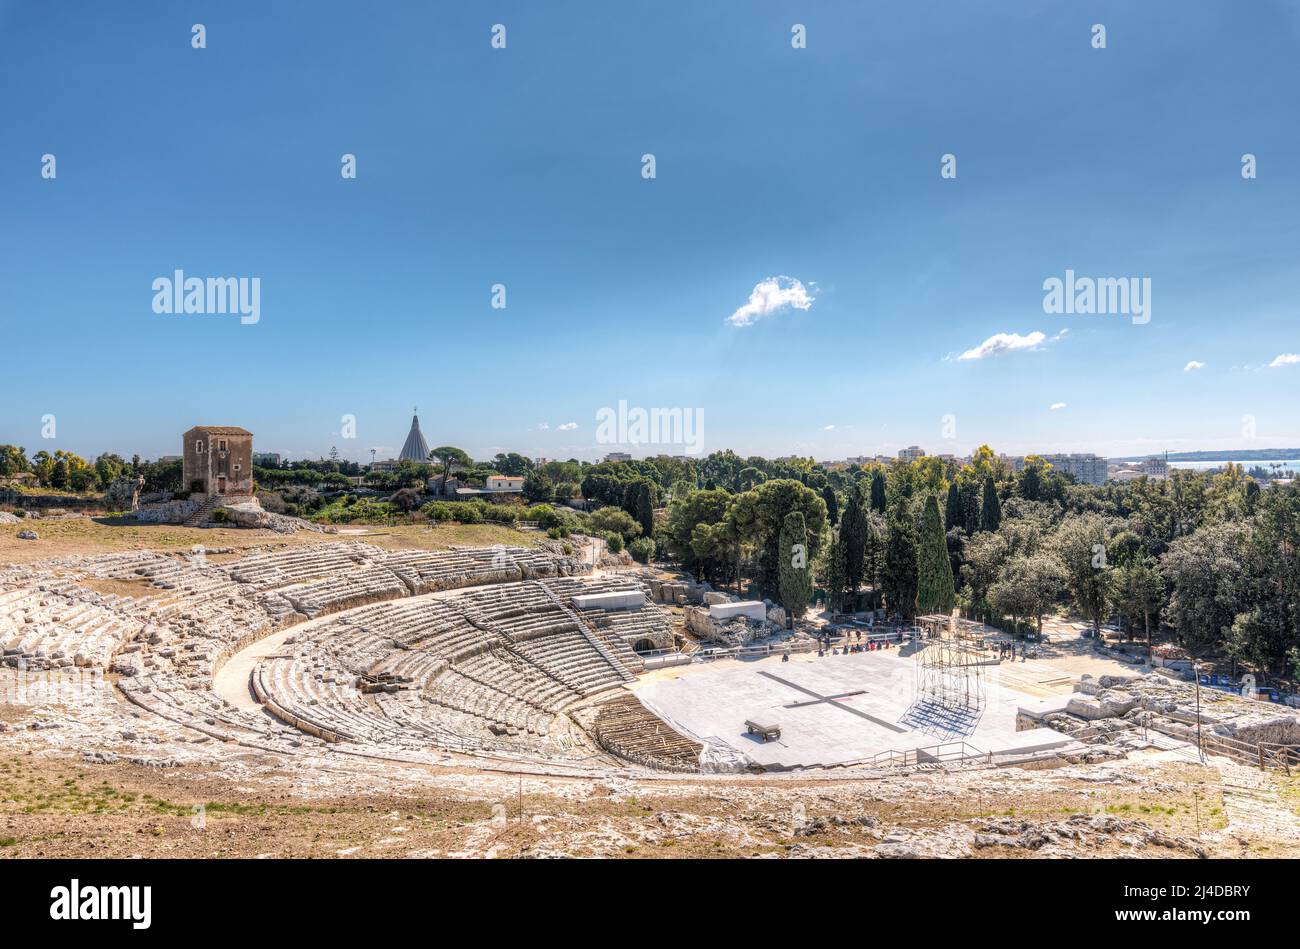 El teatro griego de Siracusa, dentro del parque arqueológico de Neapolis Foto de stock